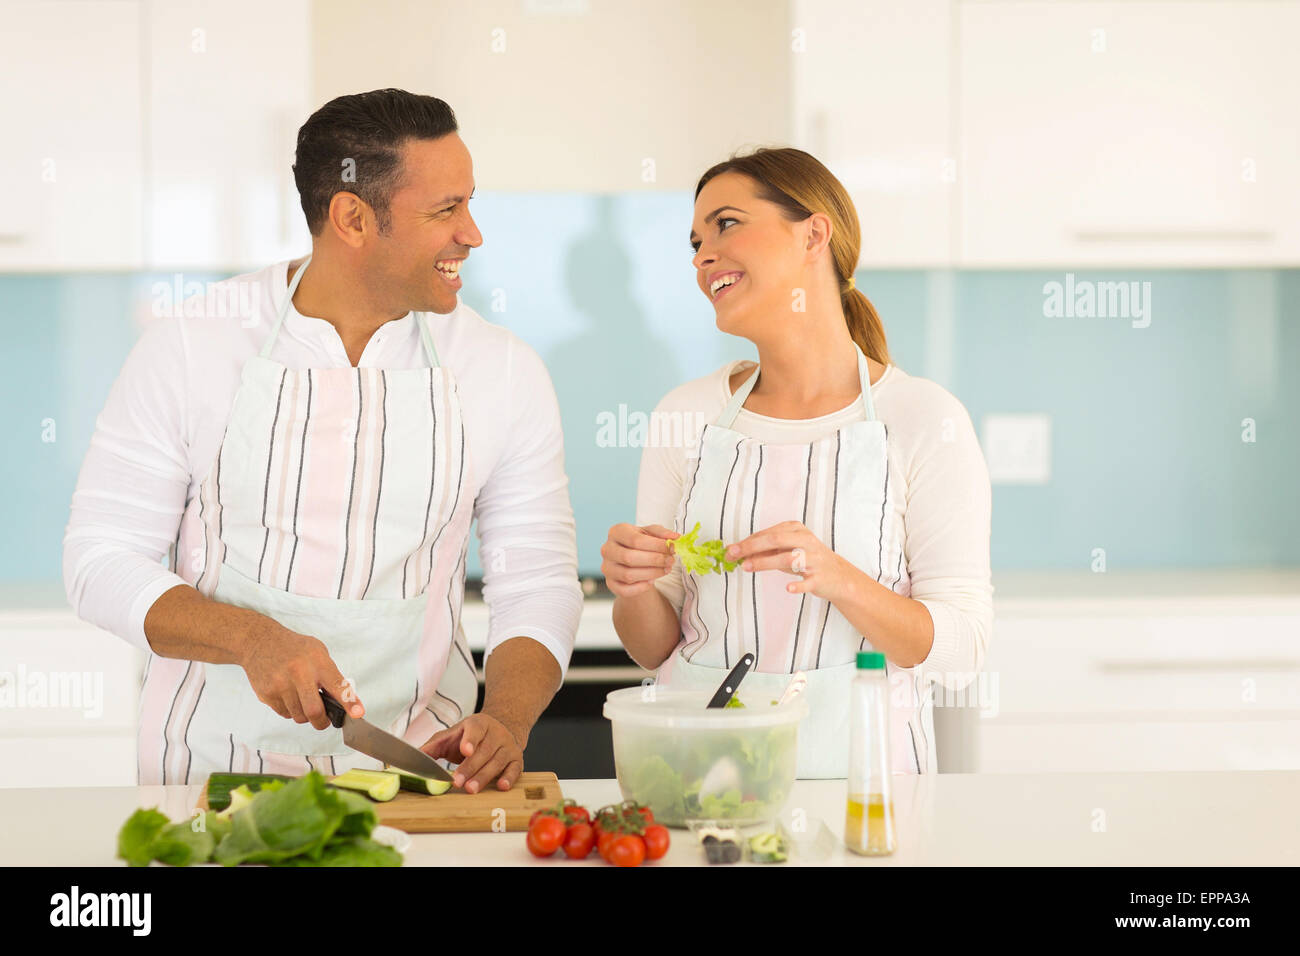 Allegro giovane cucinare insieme a casa Foto Stock